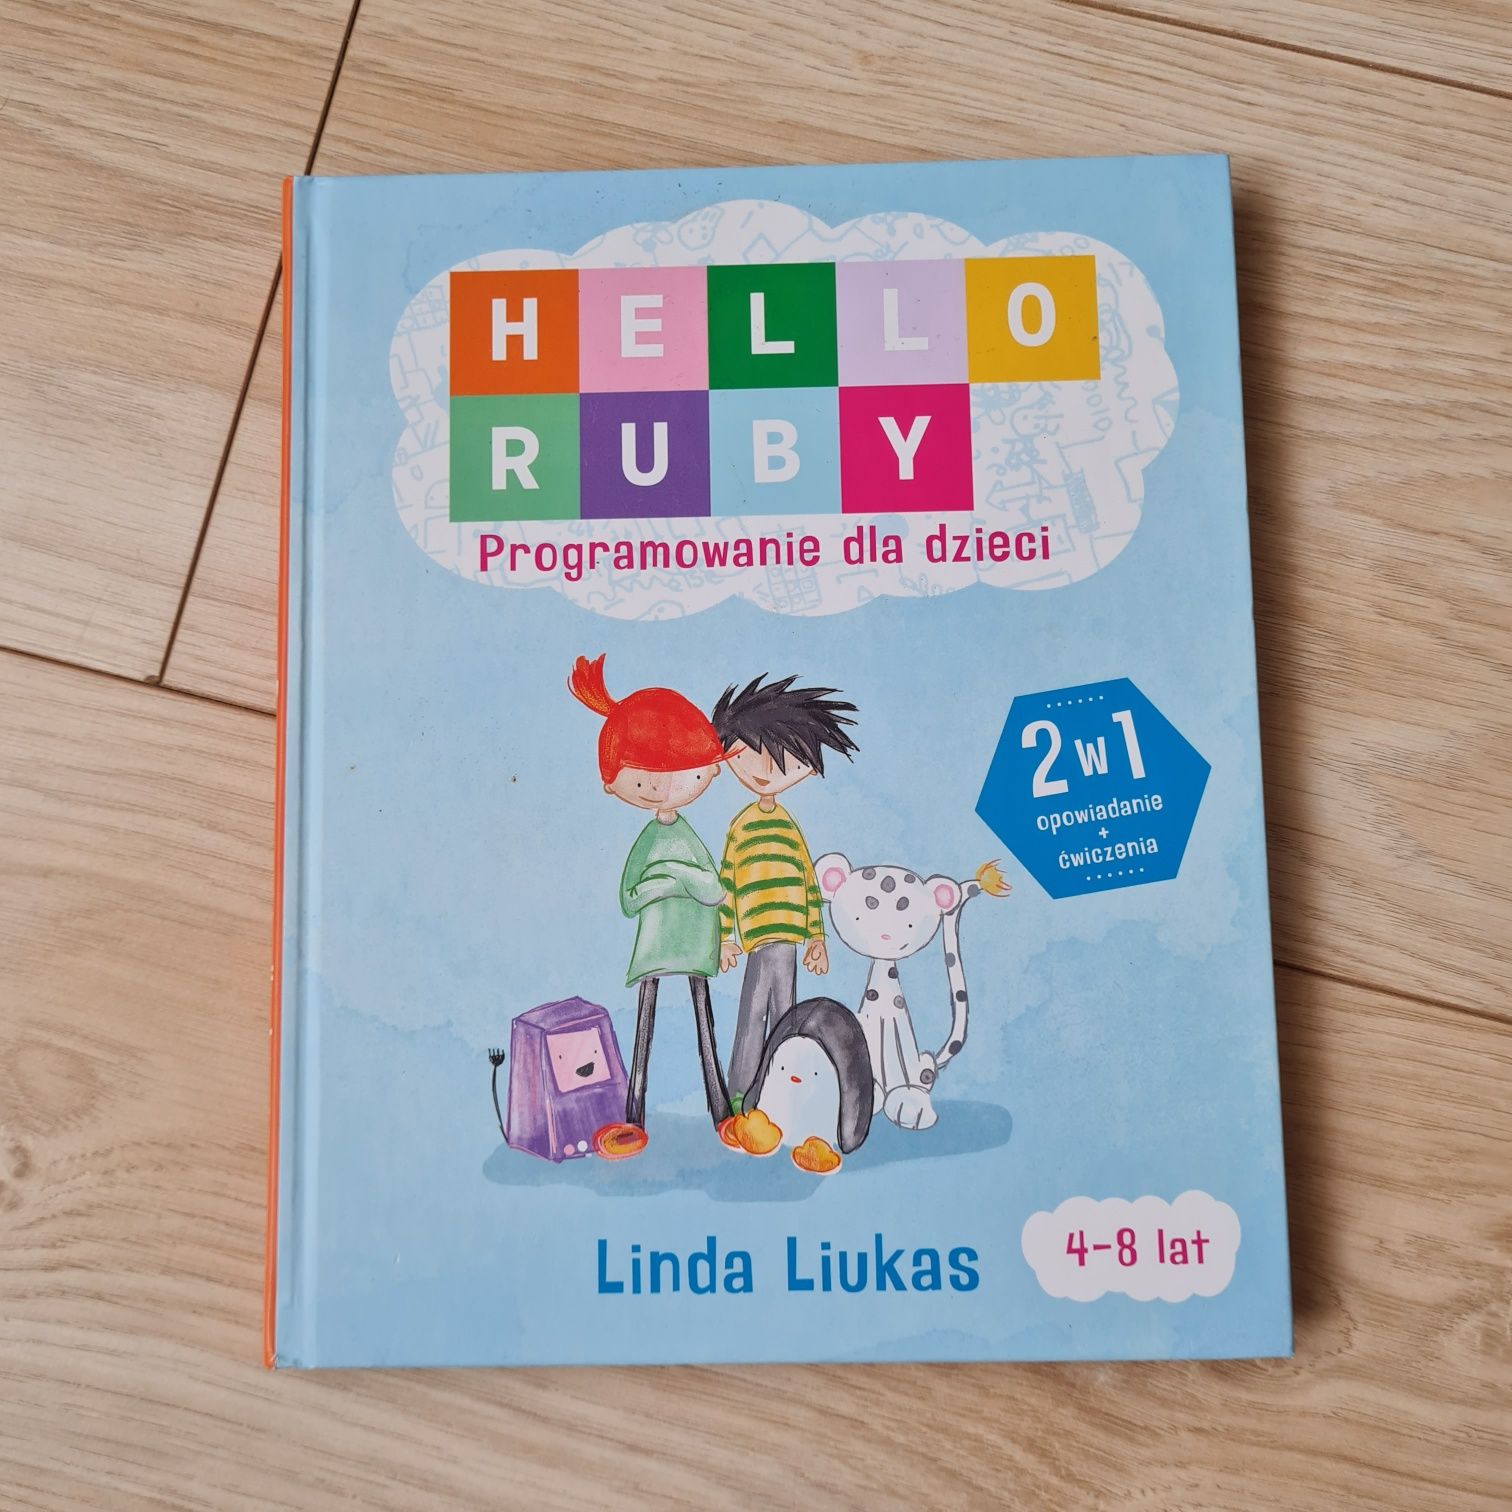 Hello Ruby programowanie dla dzieci książka